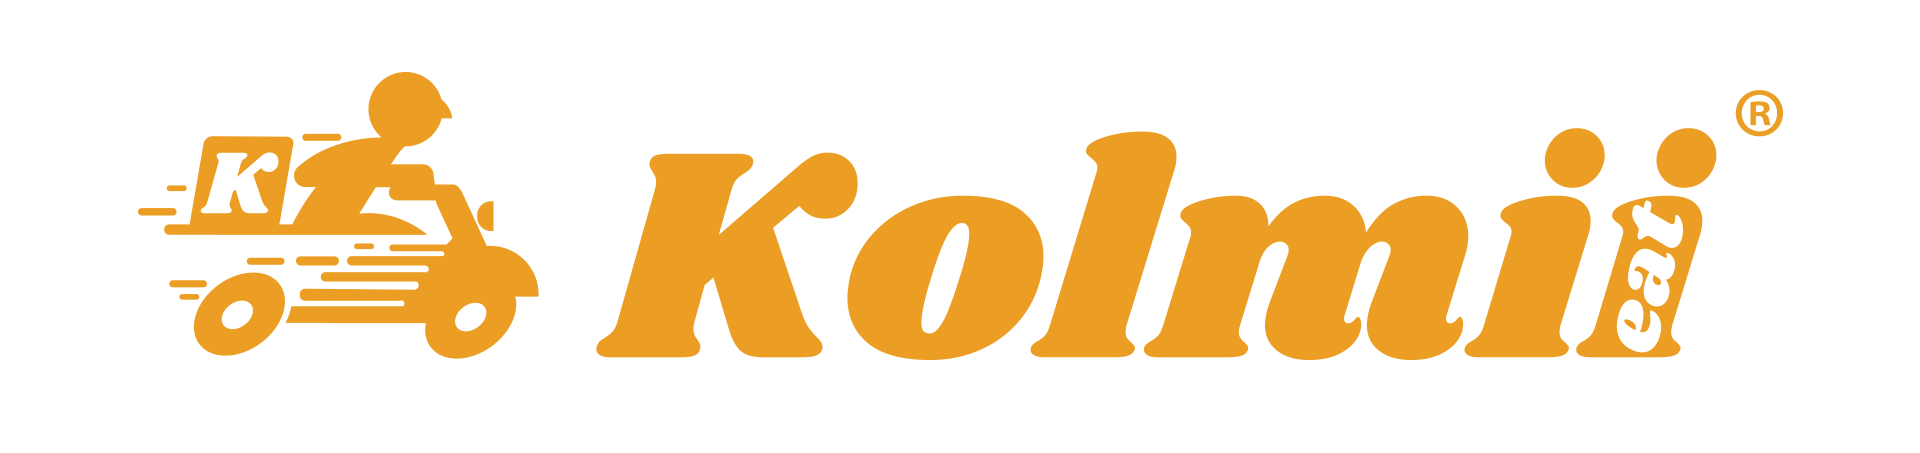 KOLMII-R_HORIZONTAL_COR.png